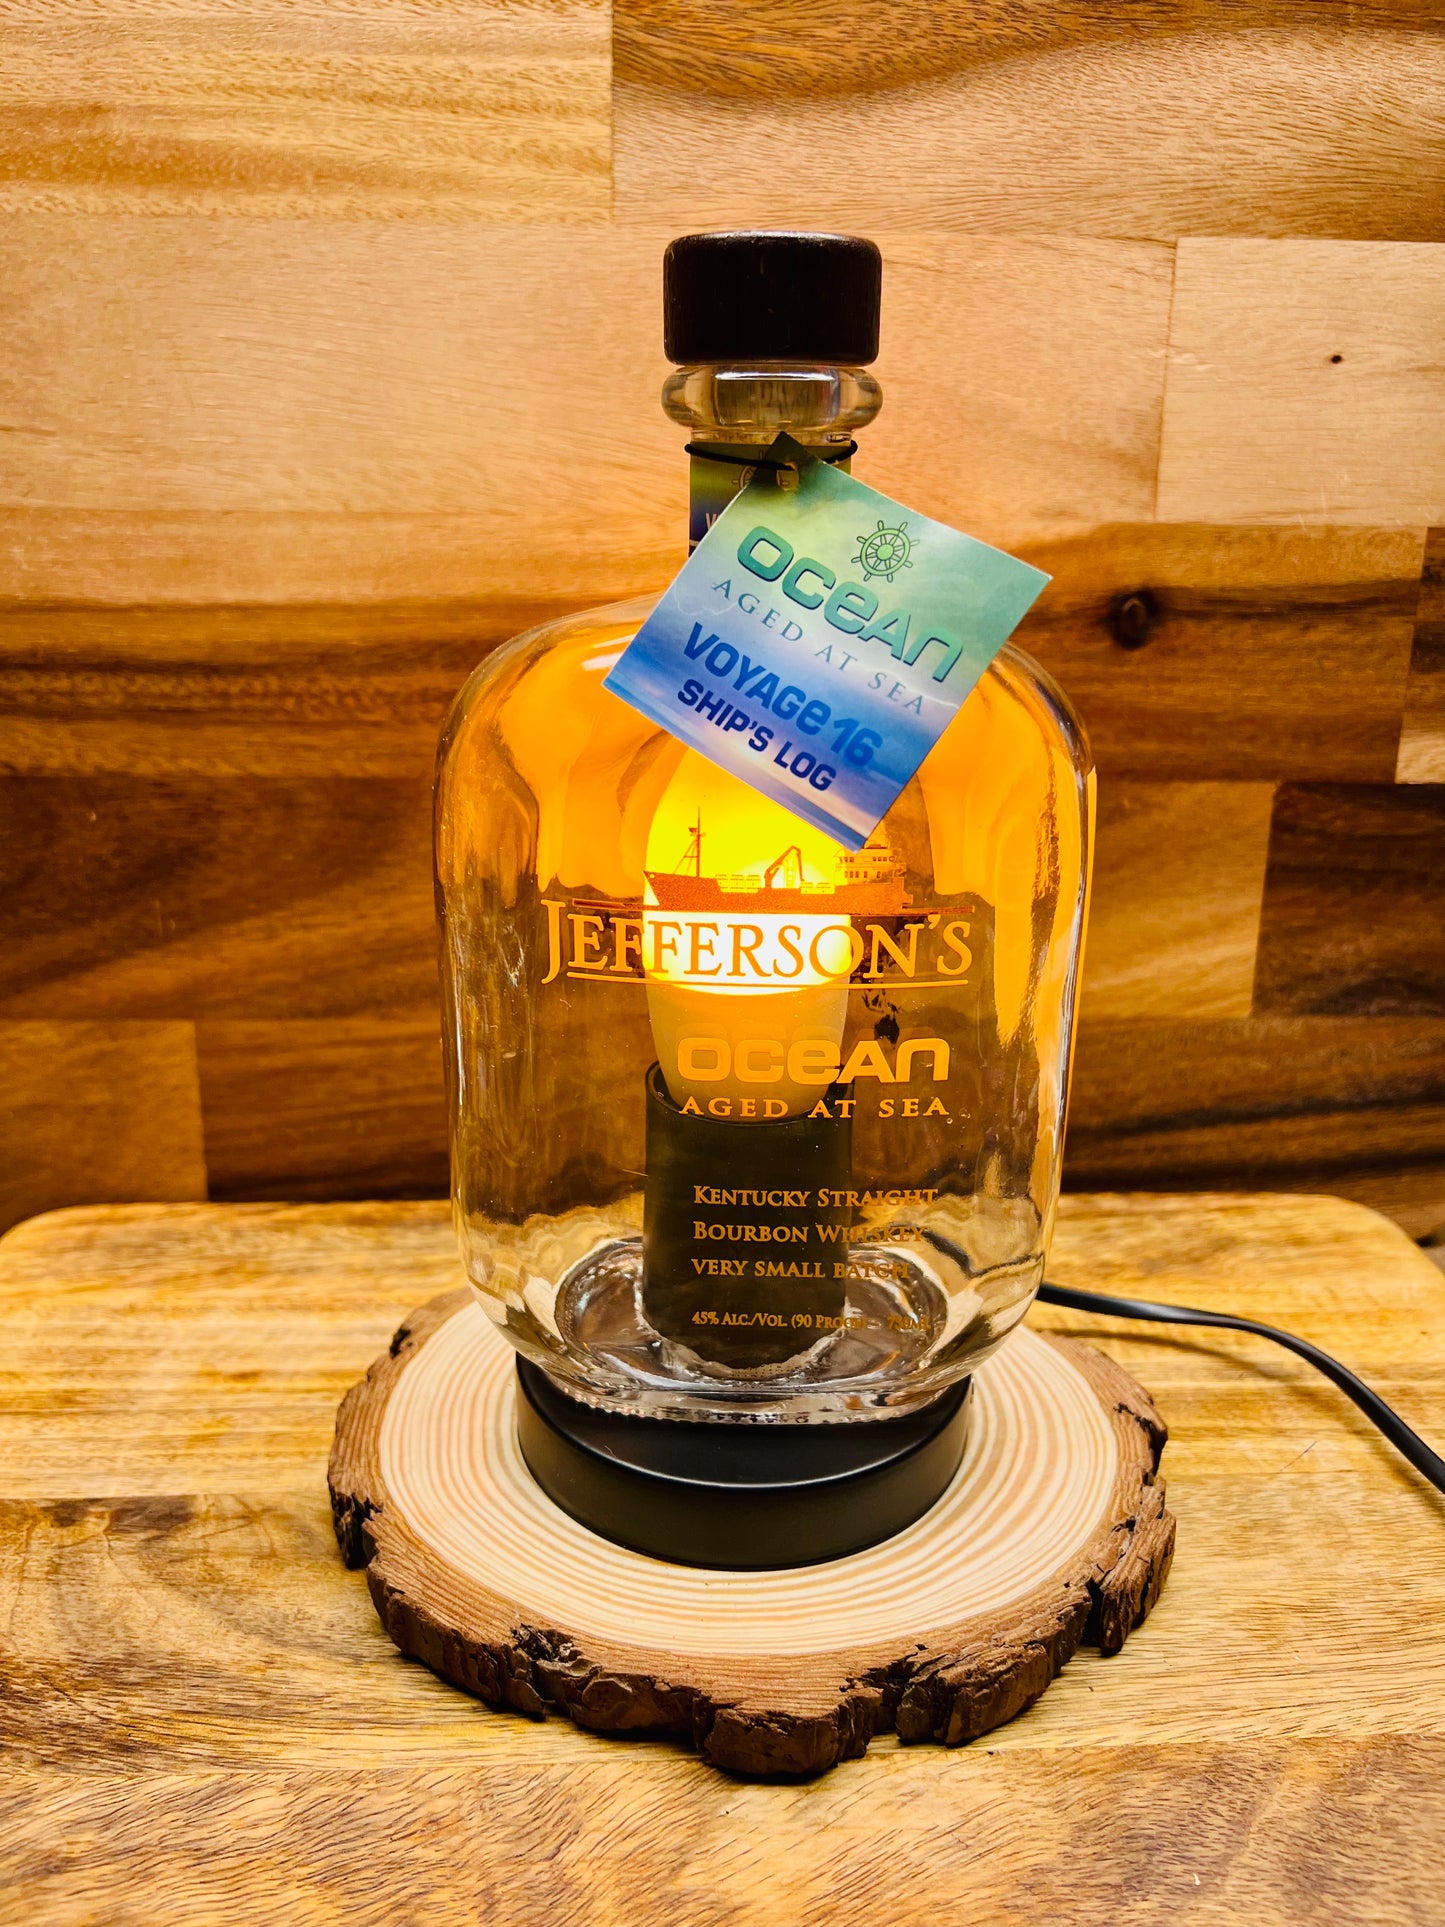 Jefferson's Ocean Bourbon Bottle Lamp